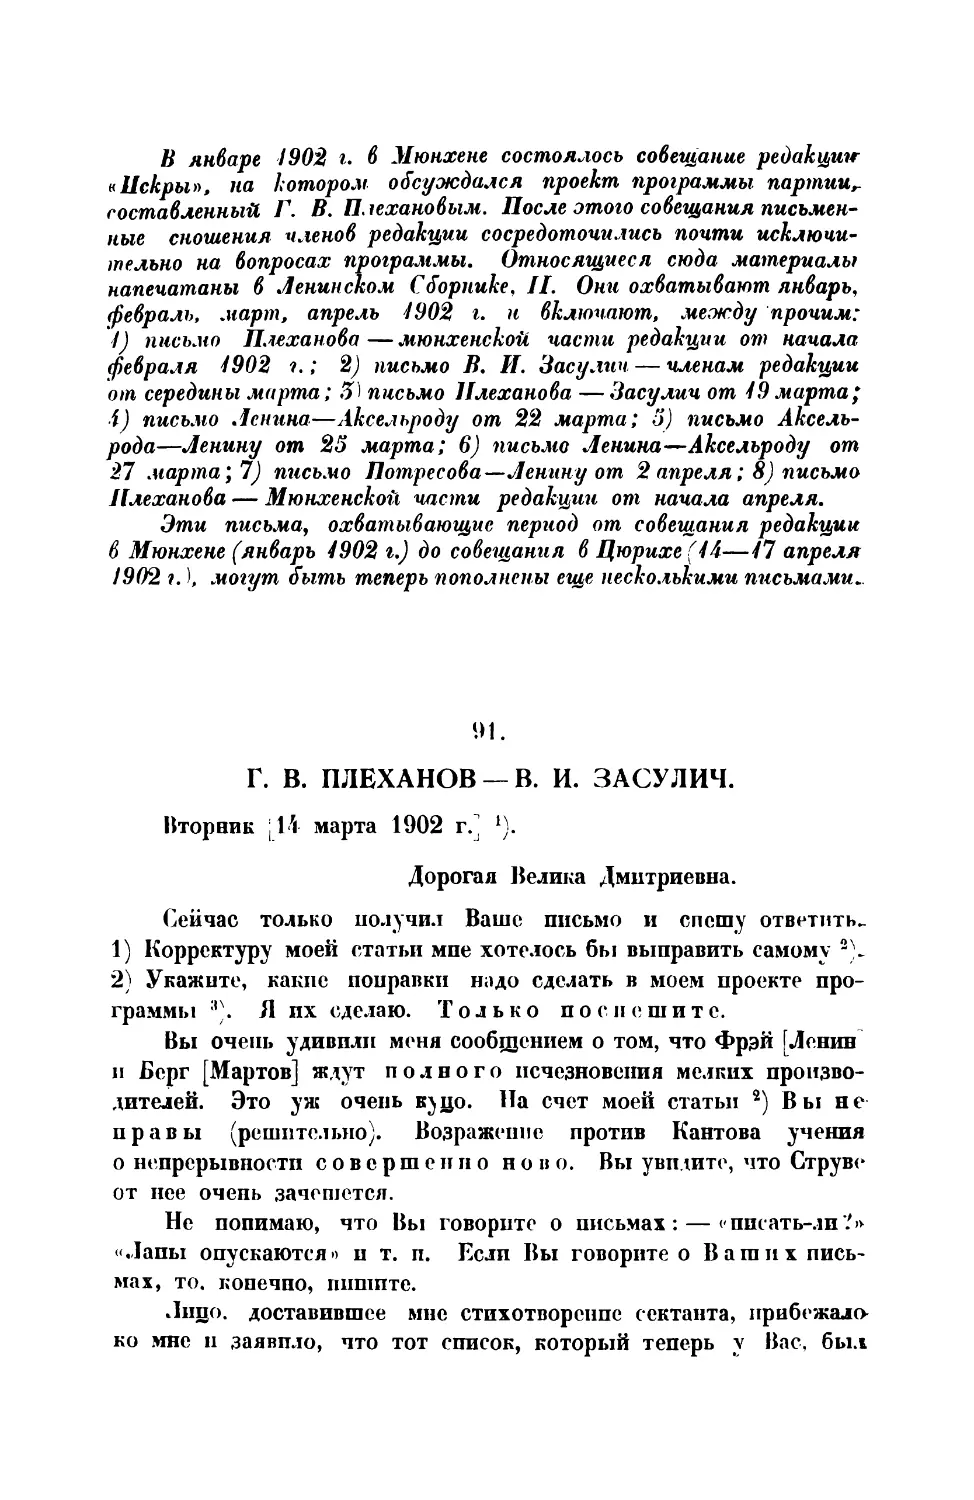 91. Г. В. Плеханов. — Письмо В. И. Засулич от 14 III 1901 г.